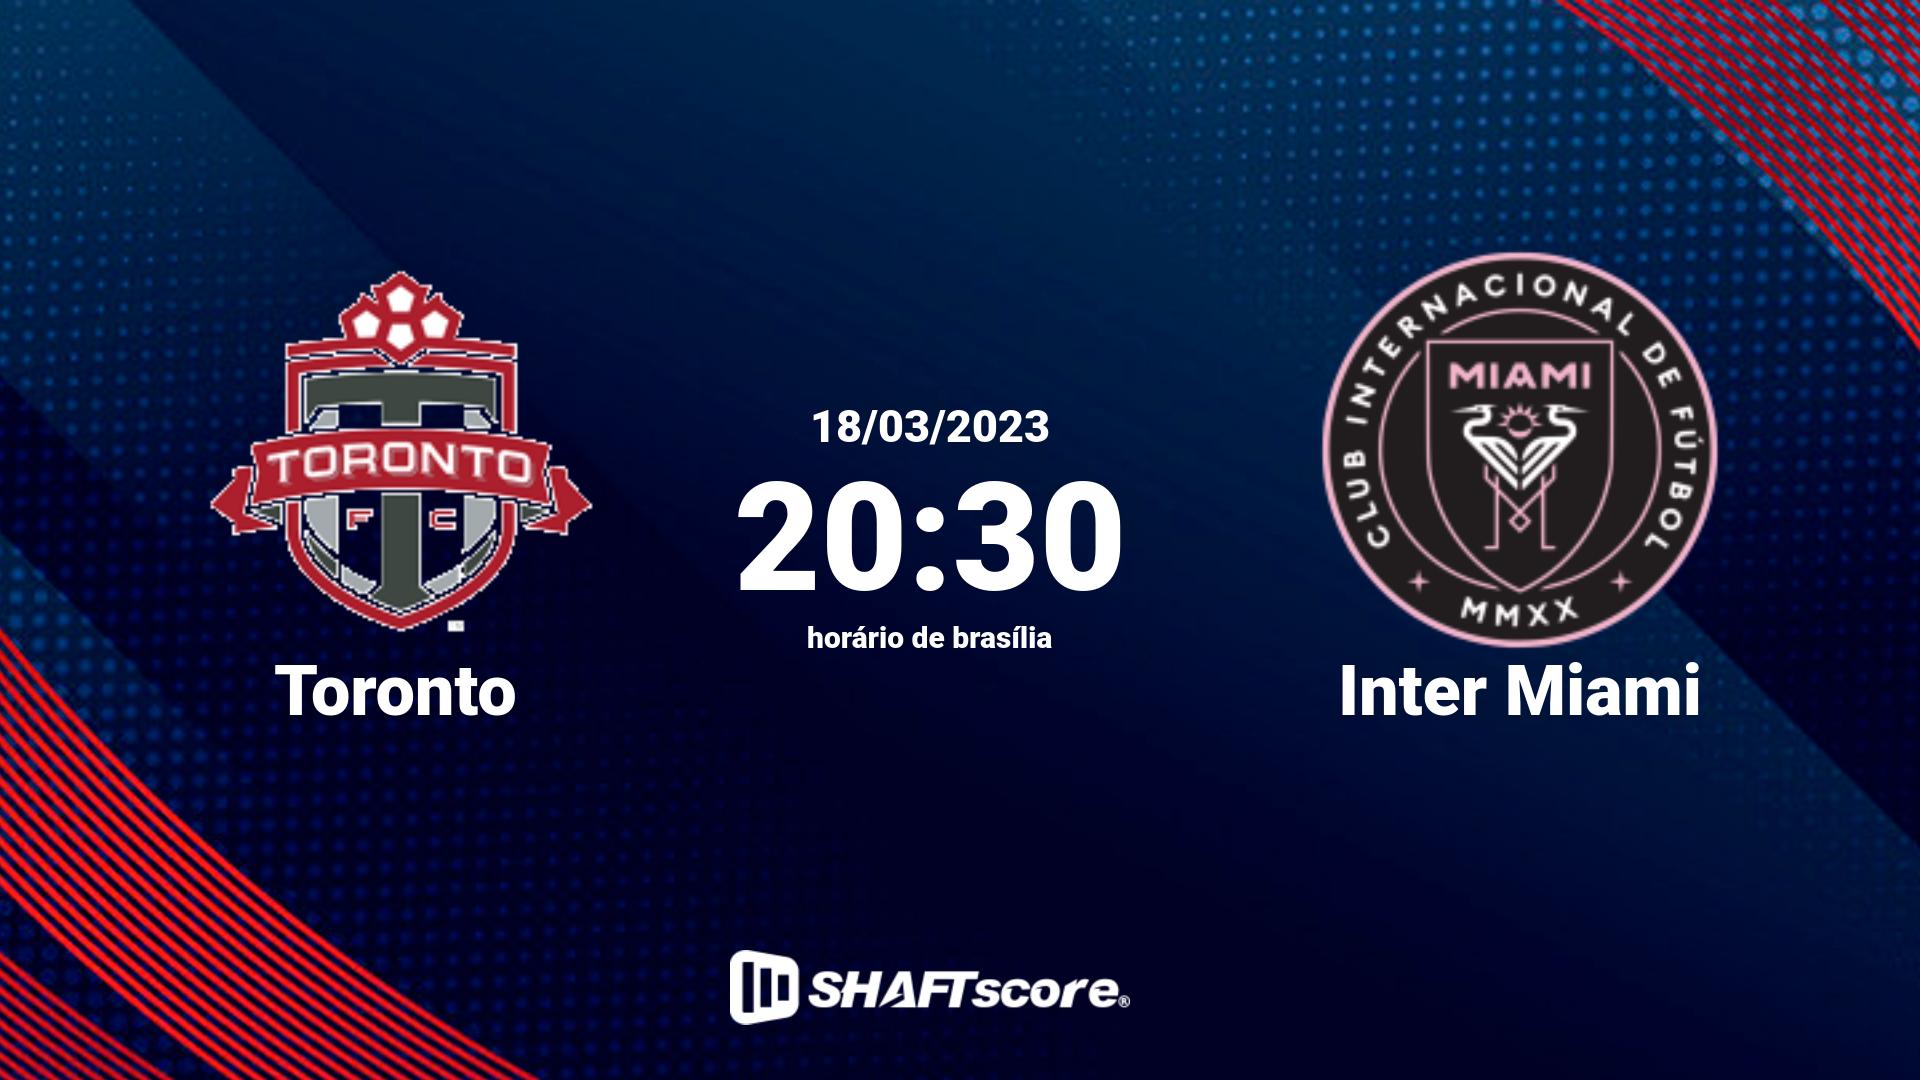 Estatísticas do jogo Toronto vs Inter Miami 18.03 20:30